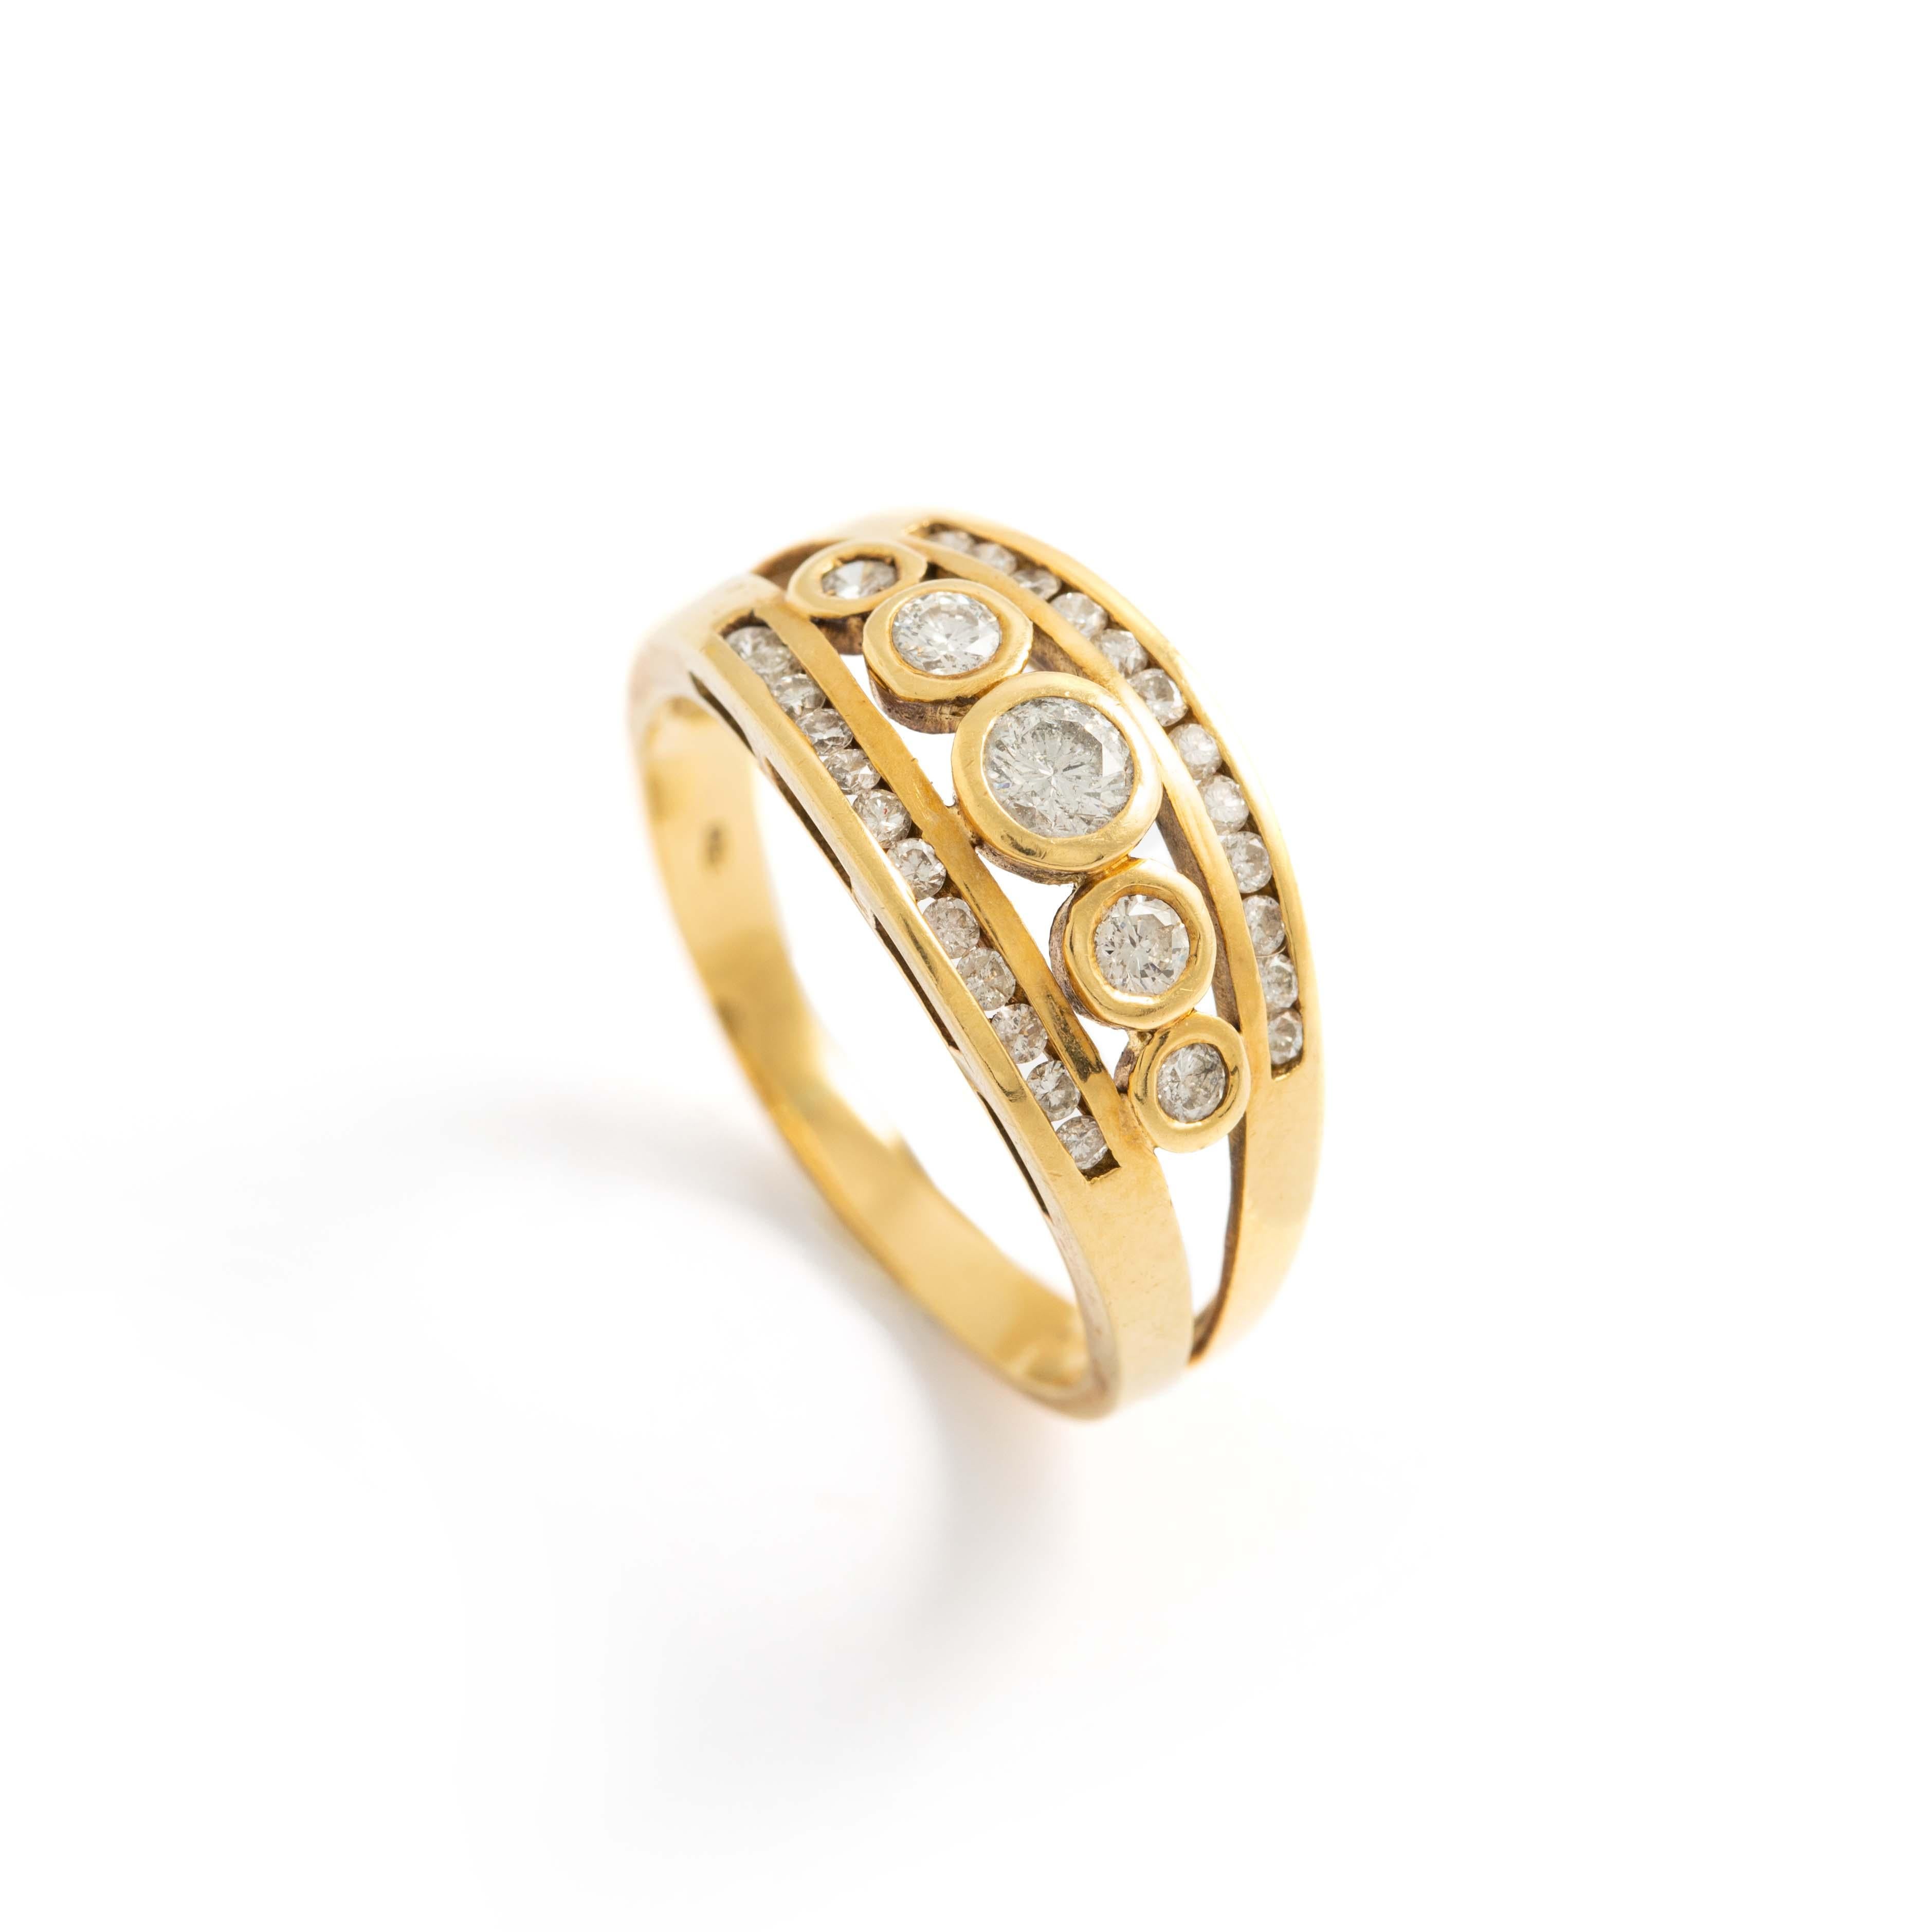 Ring aus 18 Karat Gelbgold, besetzt mit Diamanten im Rundschliff.
Bruttogewicht: 5,80 Gramm.